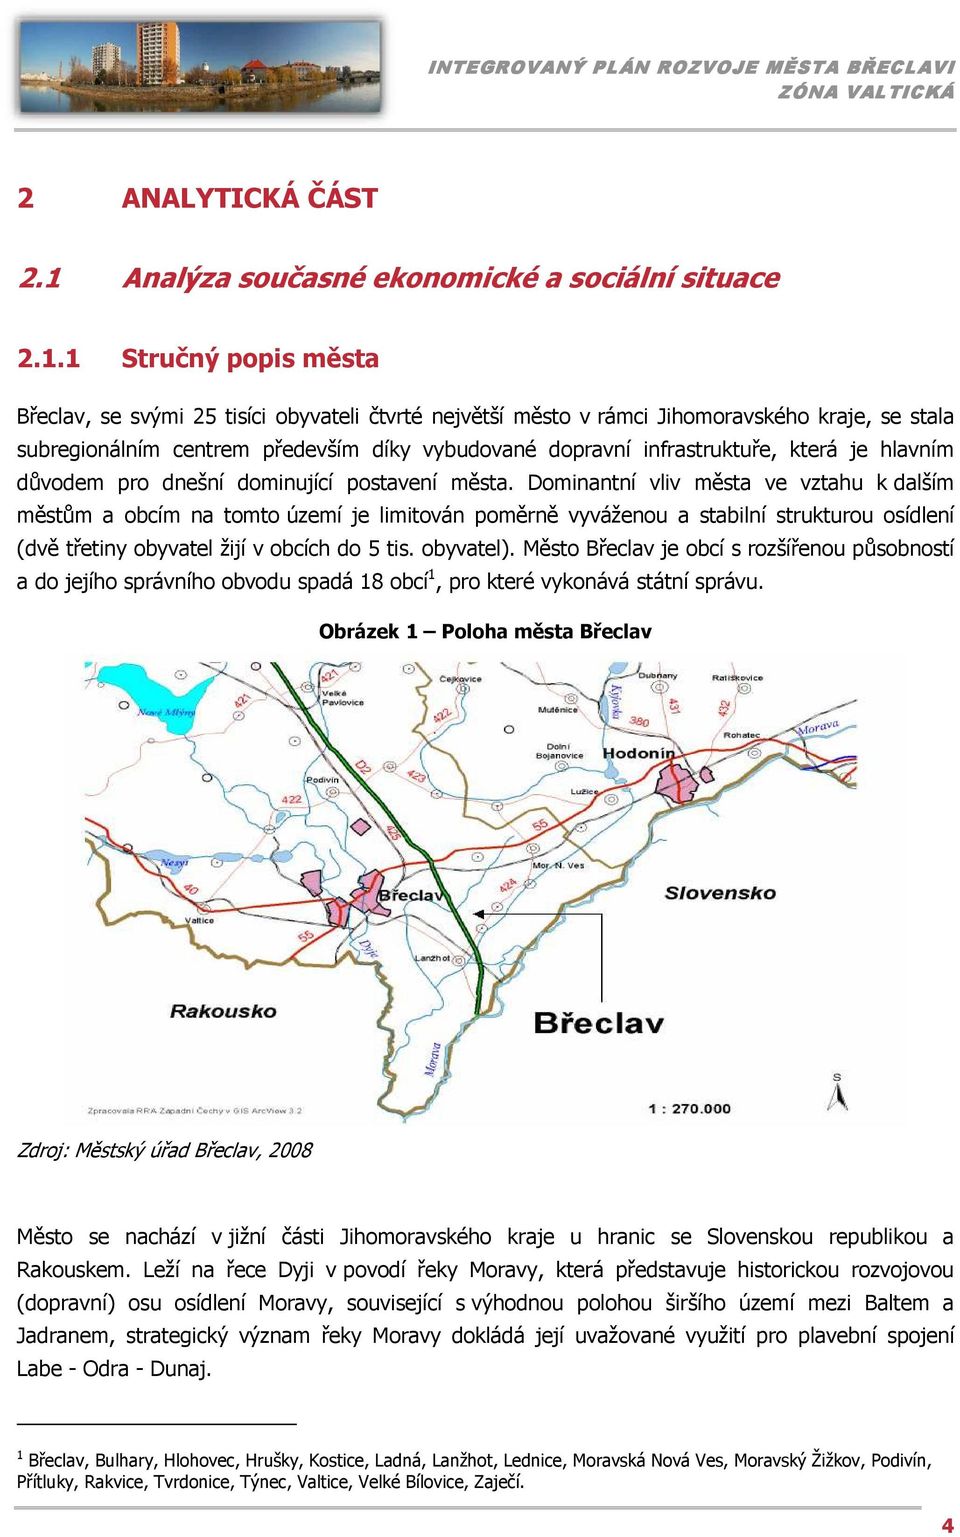 1 Stručný popis města Břeclav, se svými 25 tisíci obyvateli čtvrté největší město v rámci Jihomoravského kraje, se stala subregionálním centrem především díky vybudované dopravní infrastruktuře,